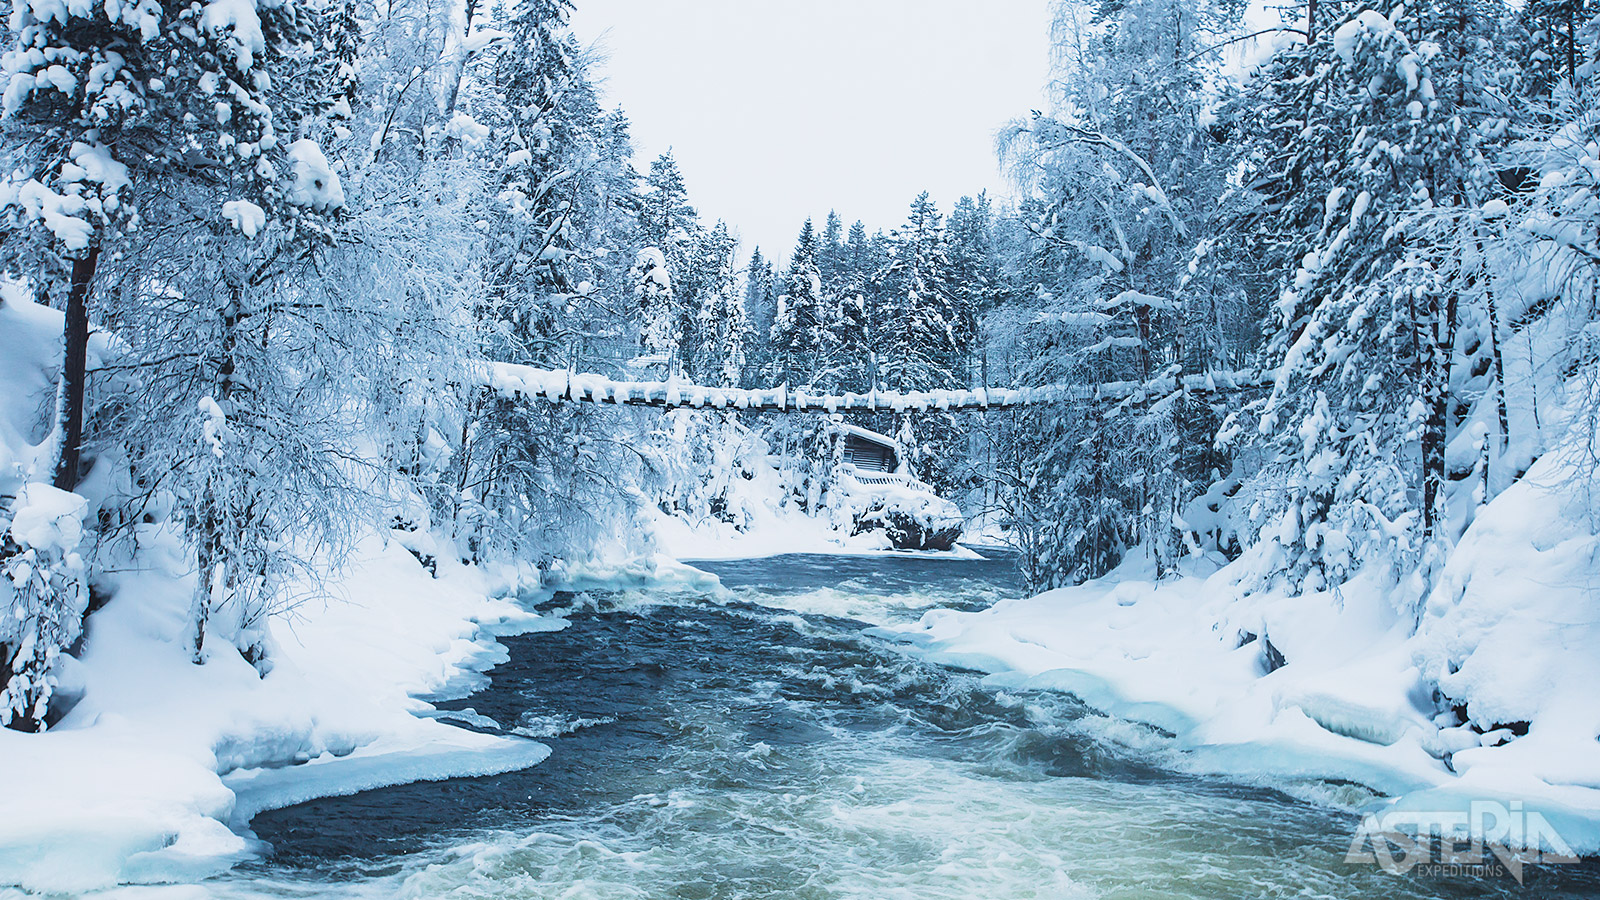 Maak een actieve wandeltocht langs in het Oulanka Nationaal Park, één van de mooiste parken van Finland